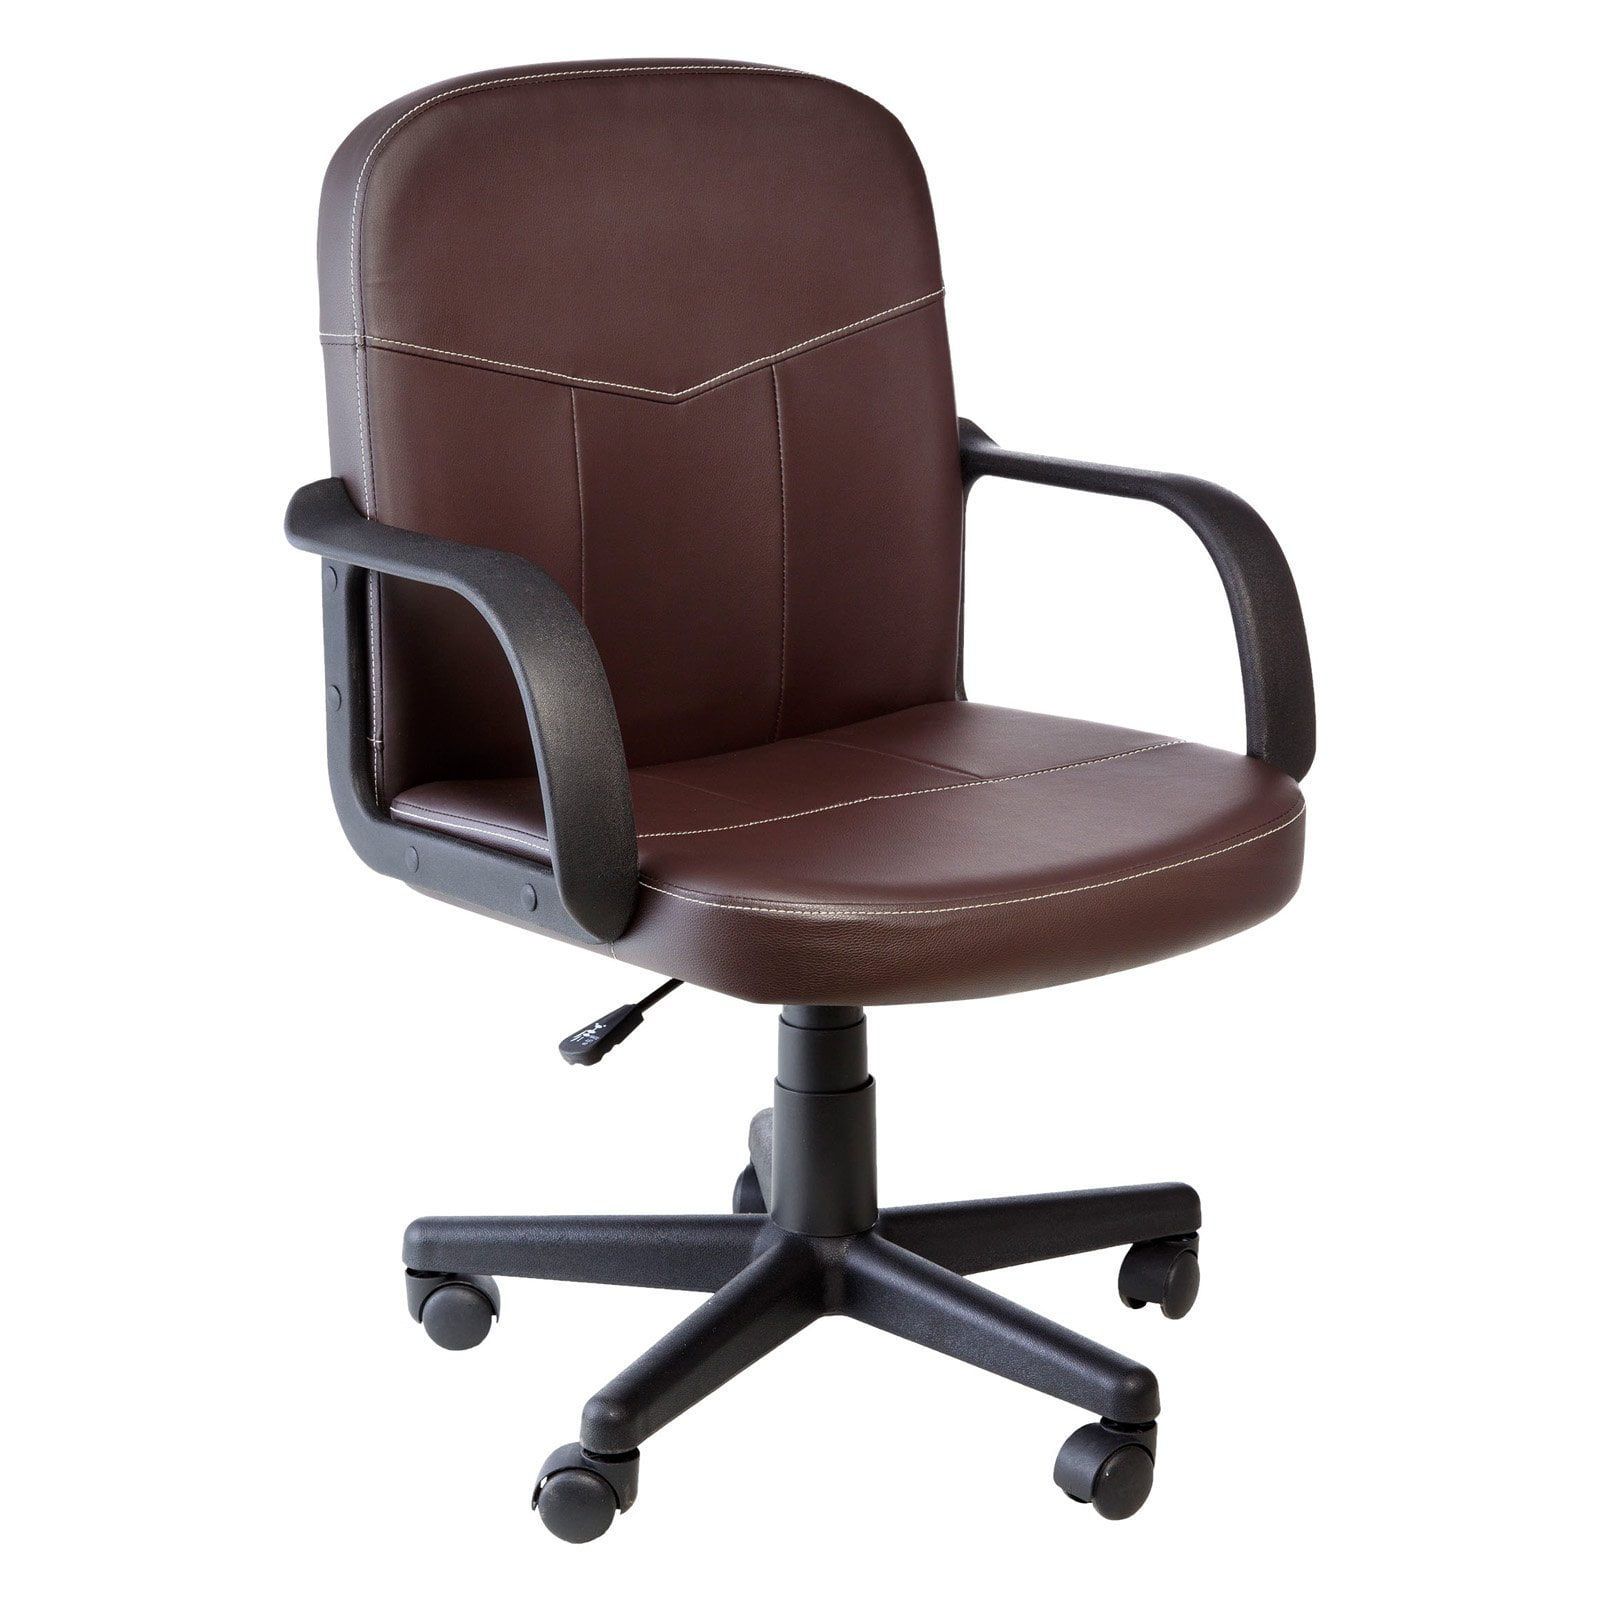 Кресло browning. Кресло Браун. Кожаные стулья для кафе.